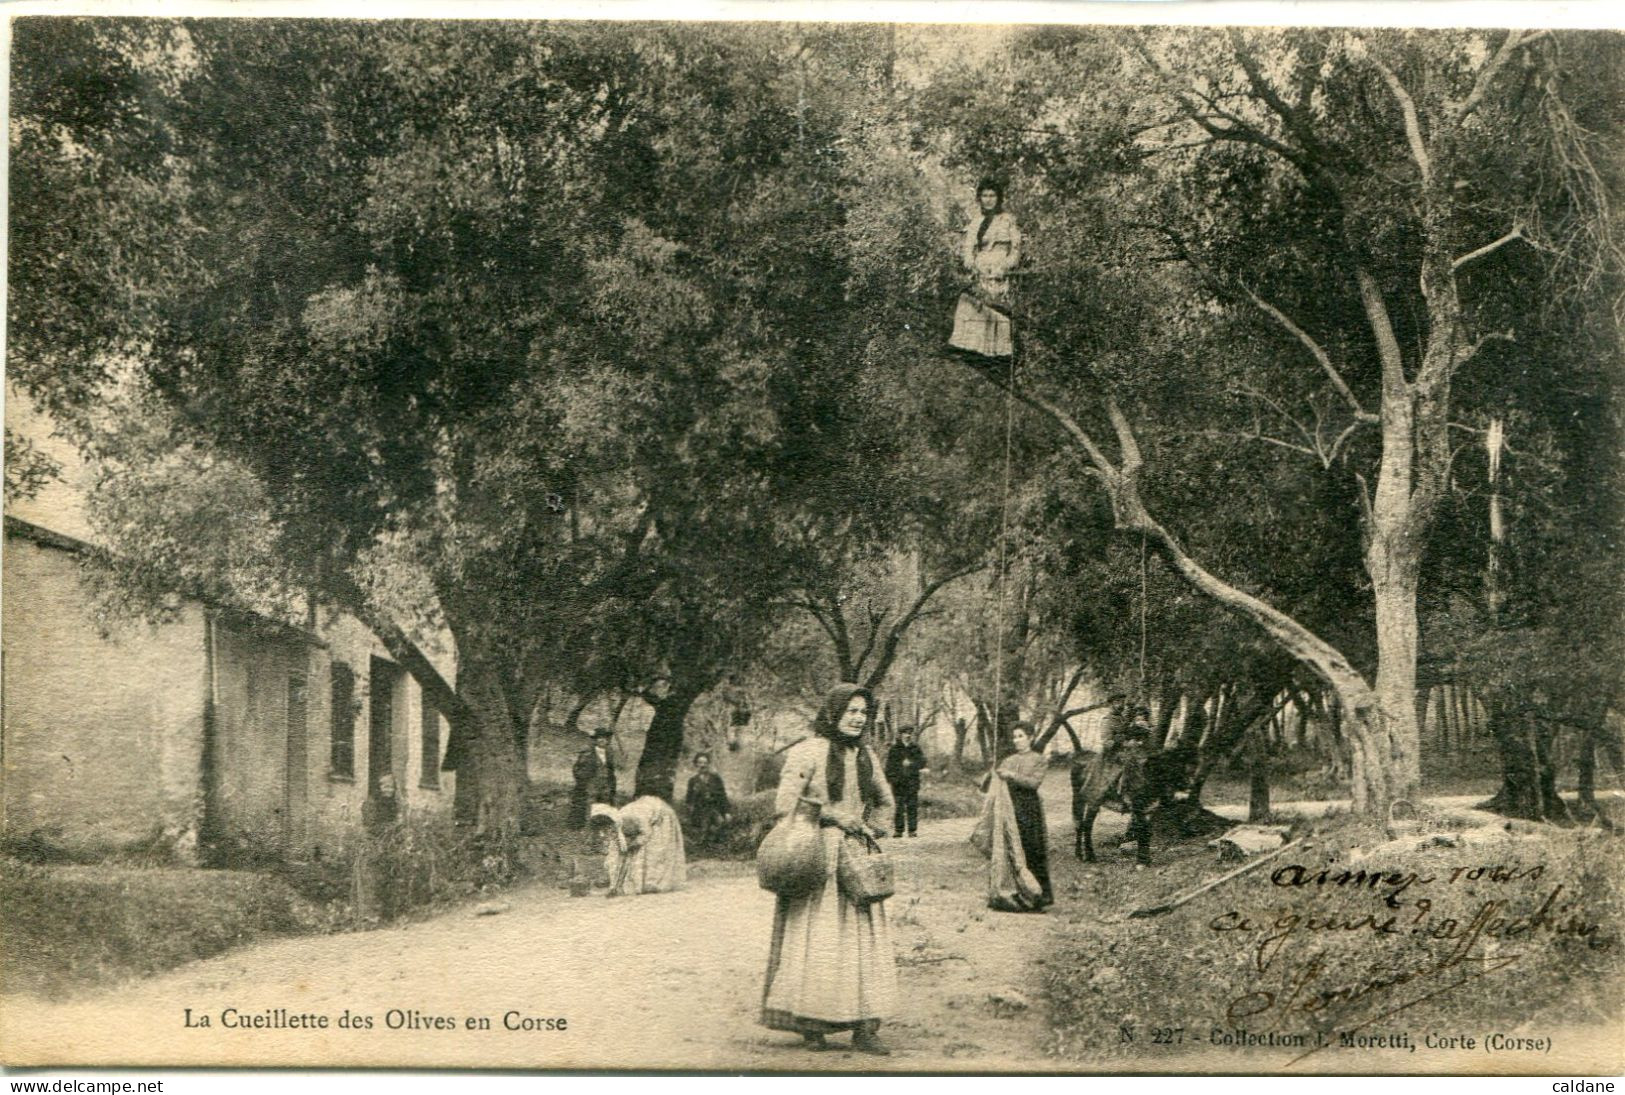 2A-CORSE  -  La Cueillette Des Olives En Corse        Collection J.Moretti,Corte - Cultures